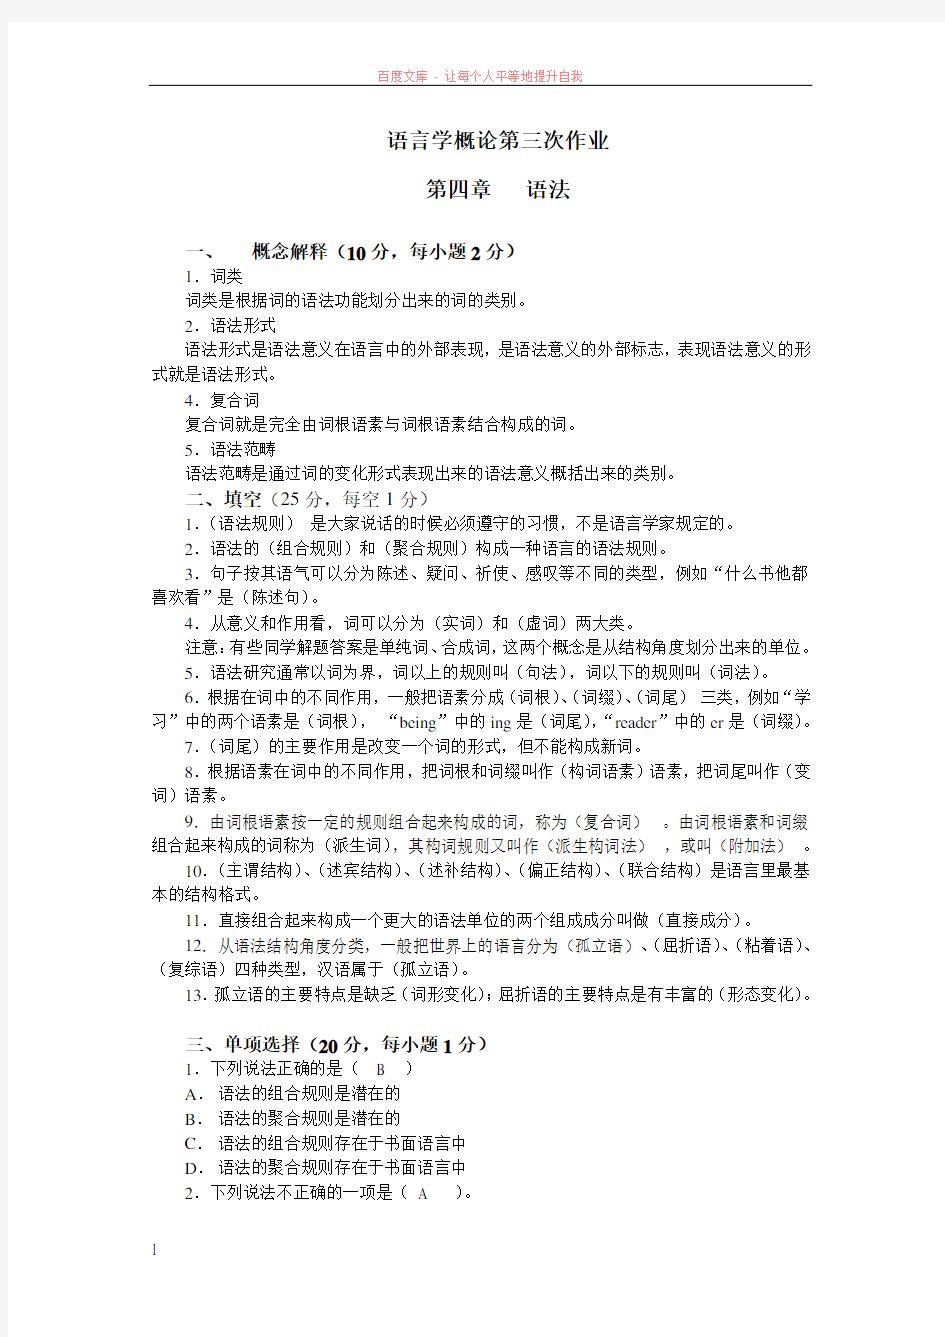 现代汉语与语言学概论(132)